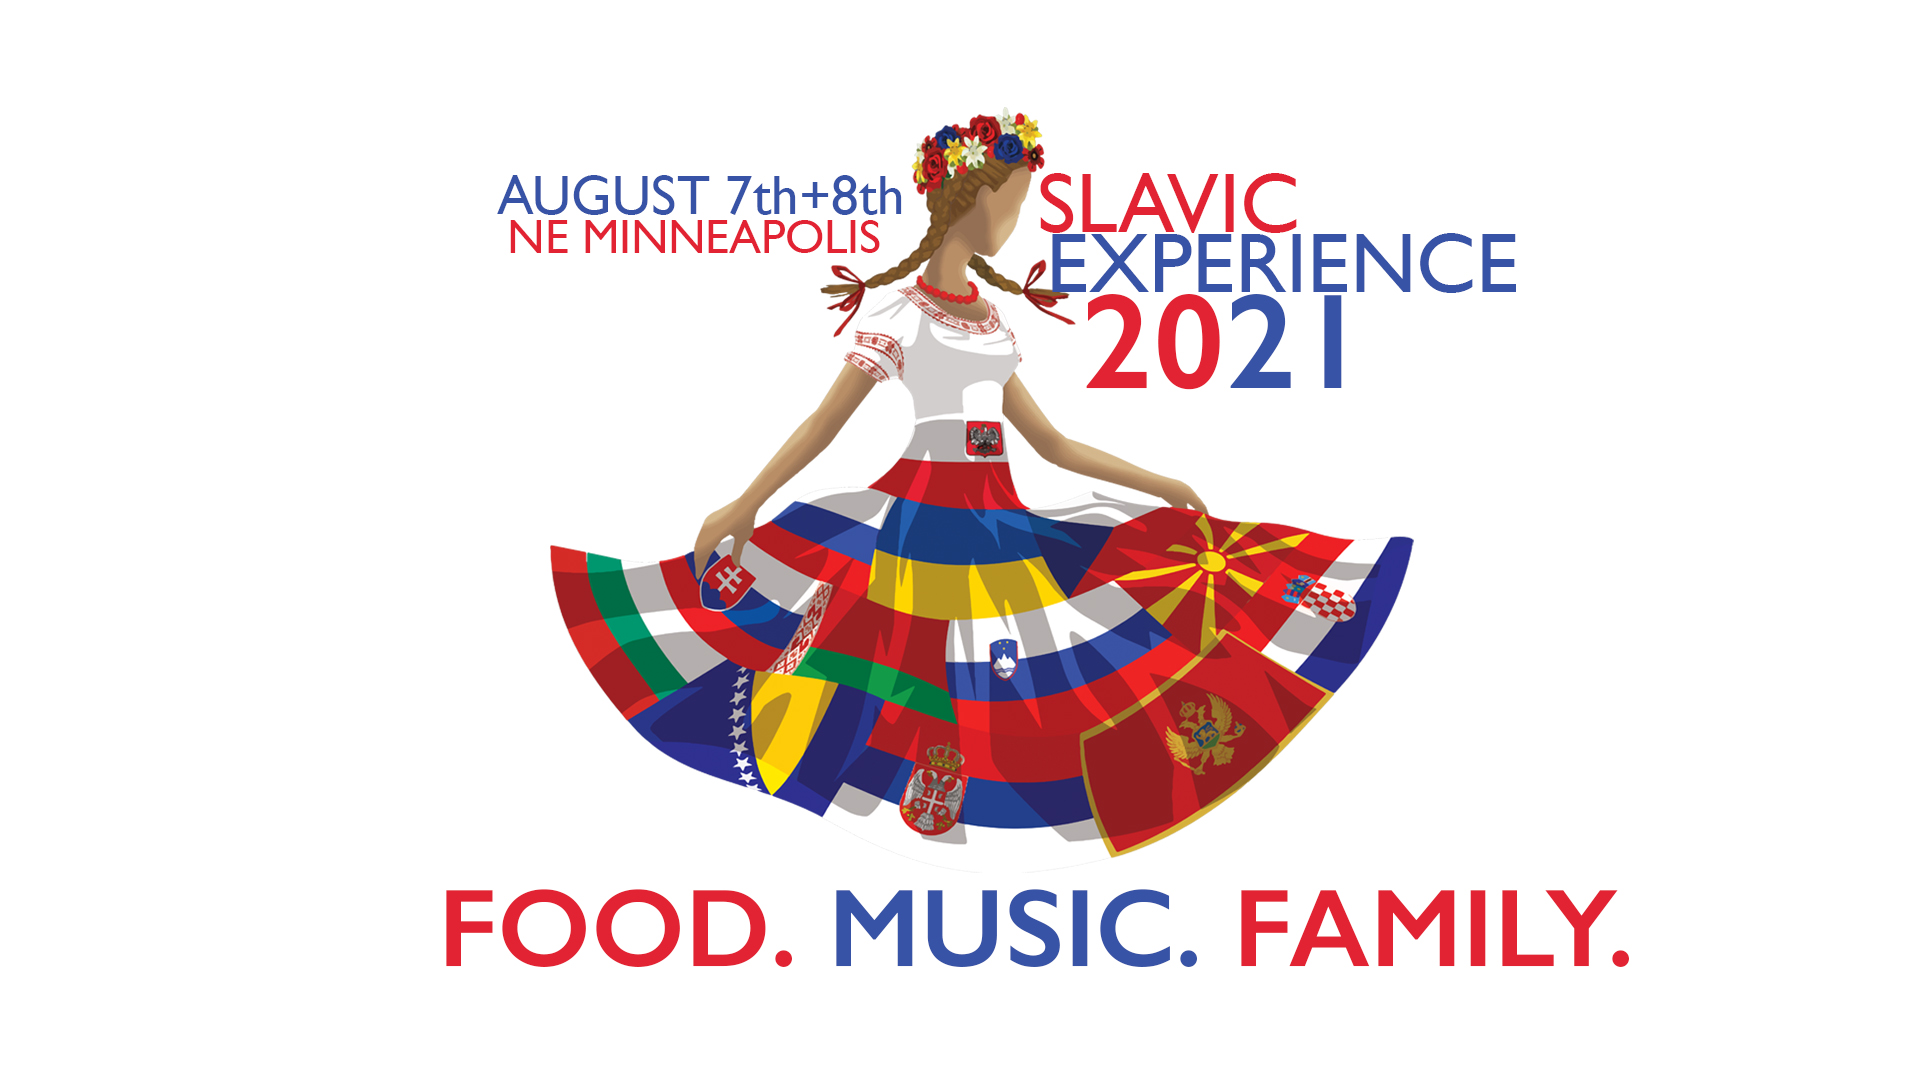 NOV - - - Slavic Experience / Slovansk sksenos Minneapolis 2021